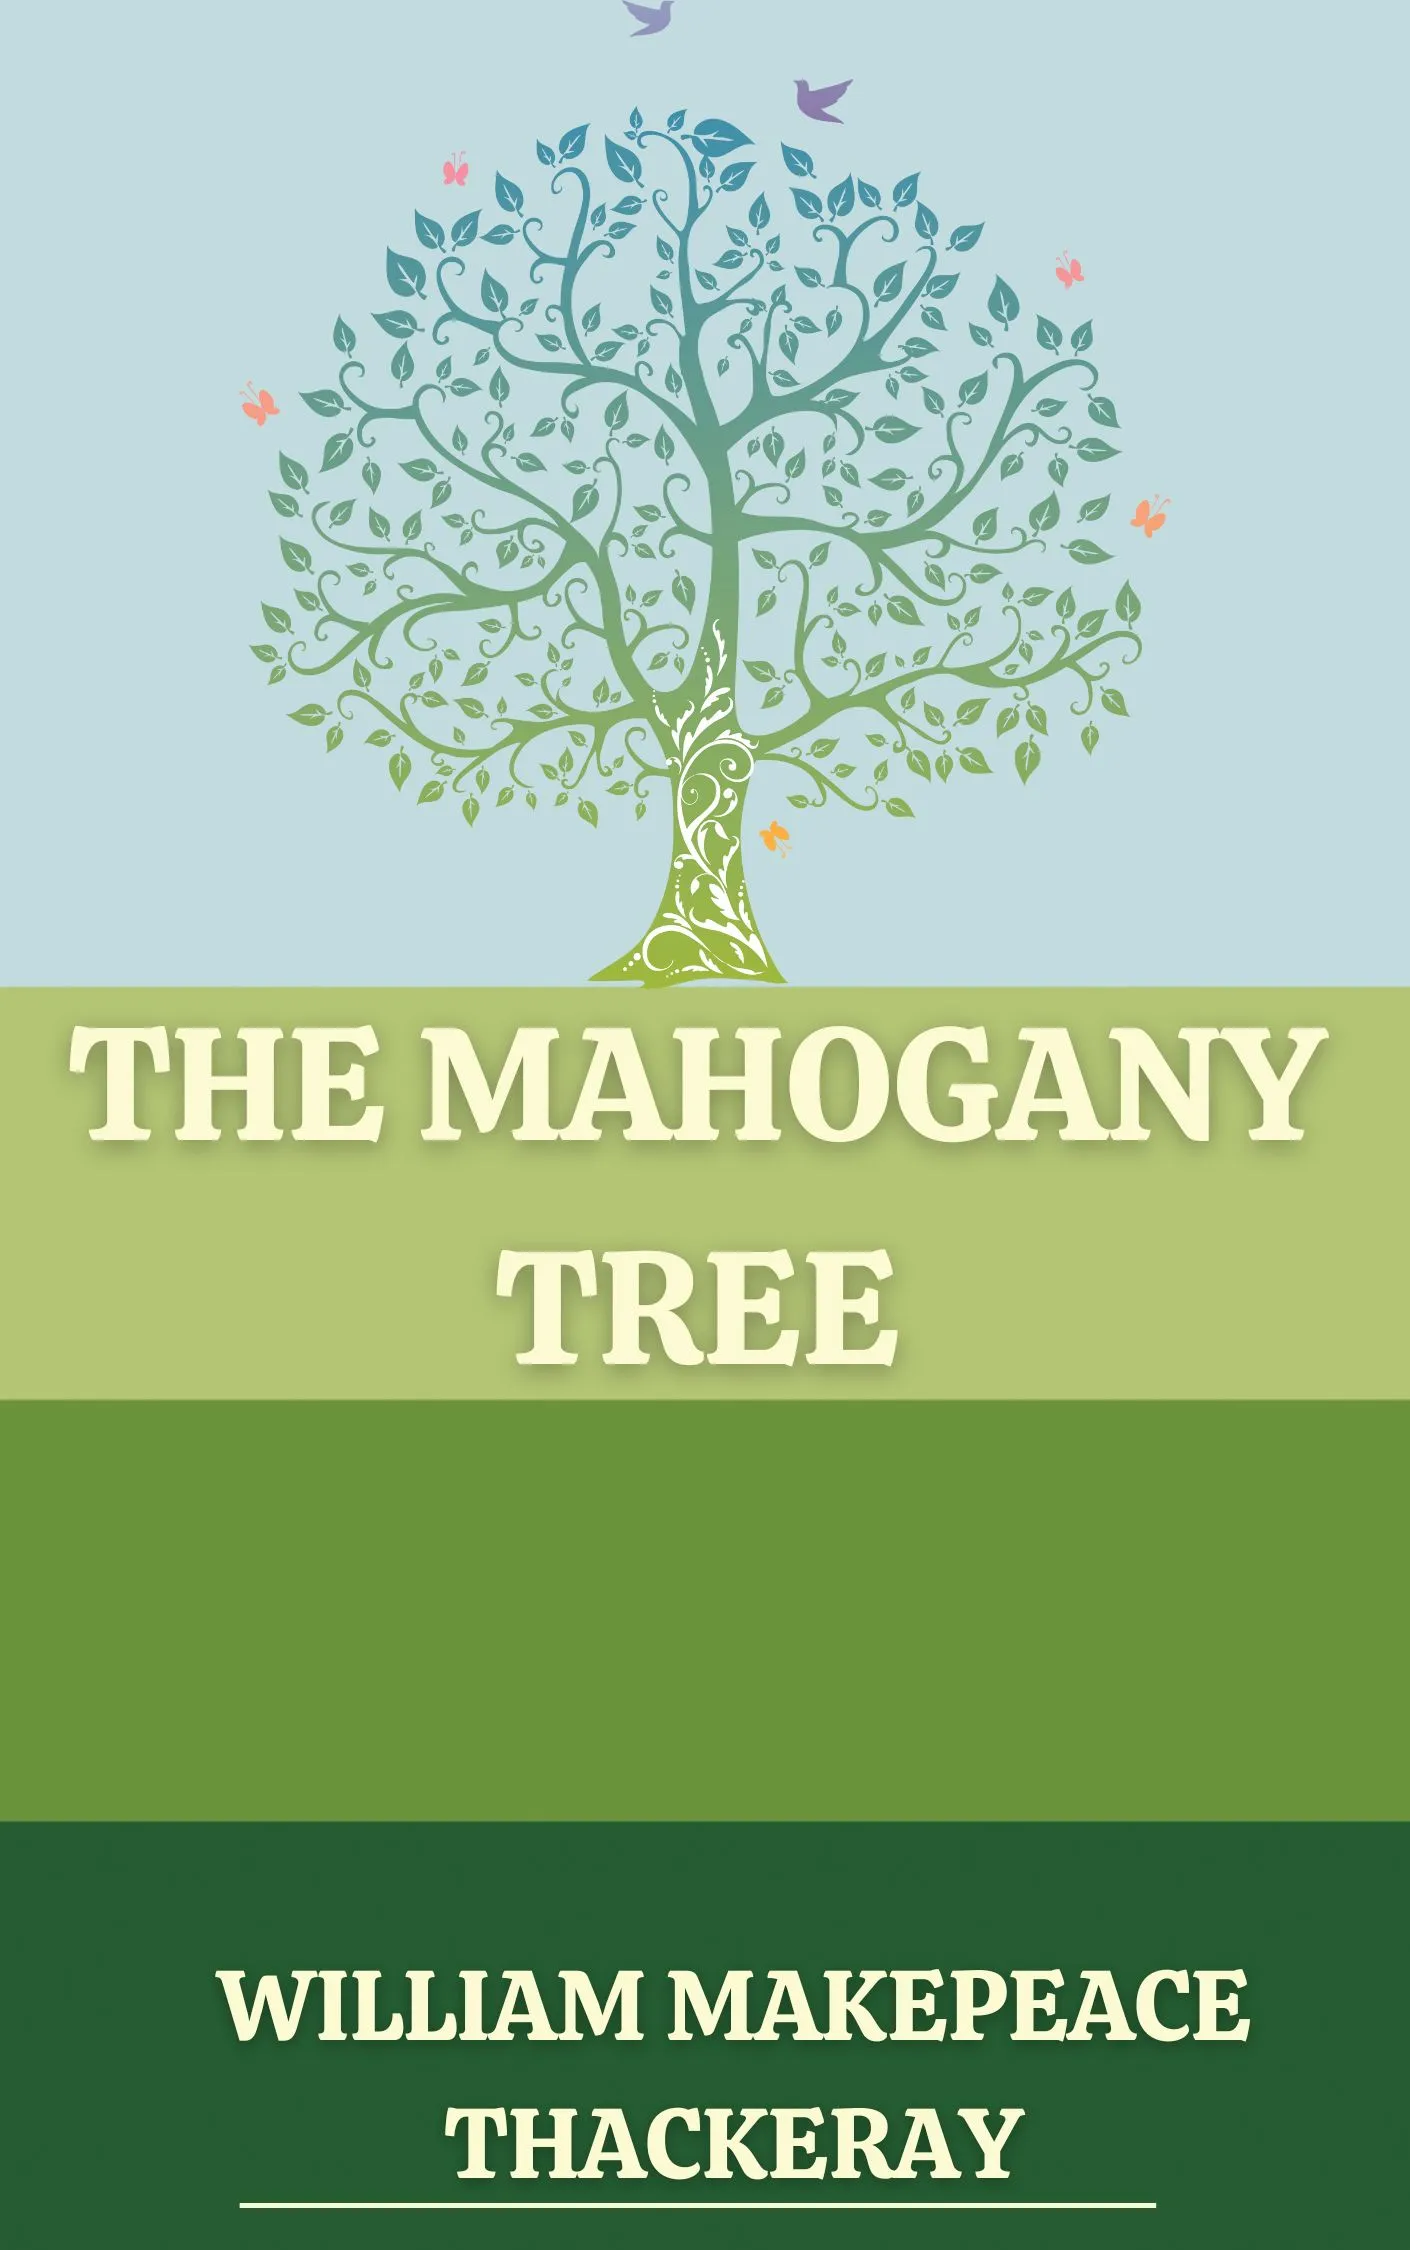 The Mahogany Tree Audiobook by William Makepeace Thackeray